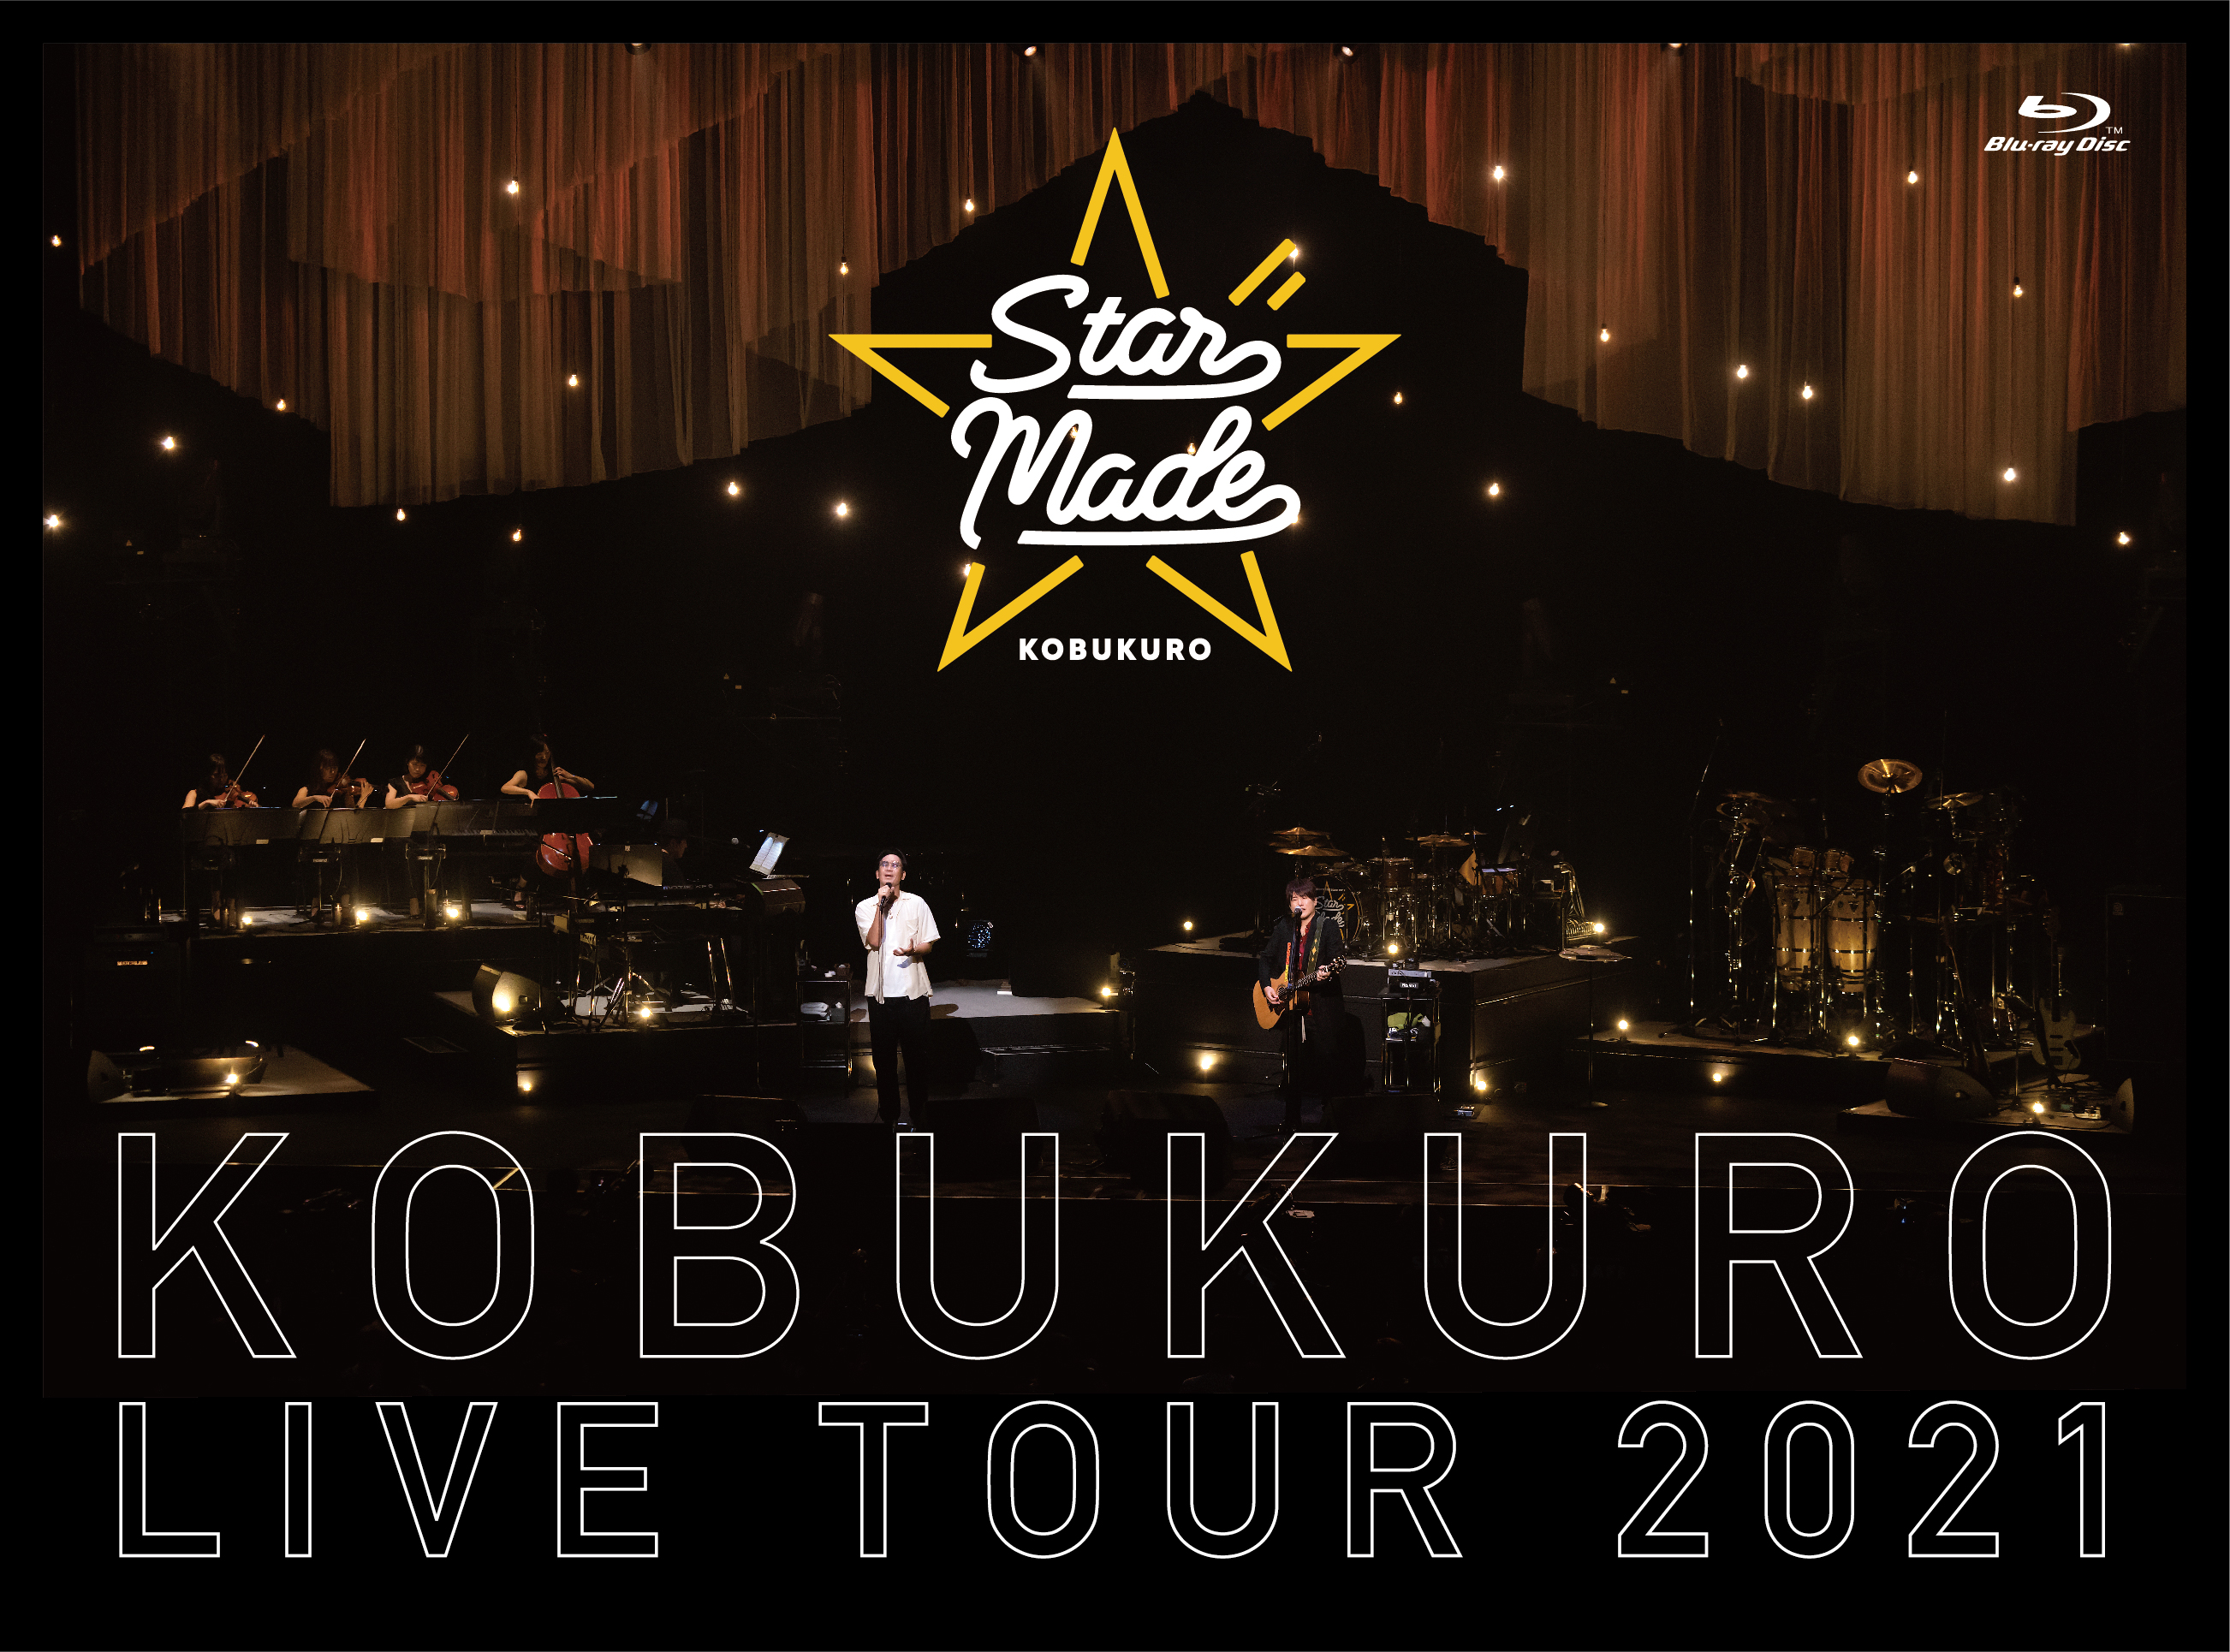 KOBUKURO LIVE TOUR 2021 "Star Made" at 東京ガーデンシアター（初回限定盤 Blu-ray）